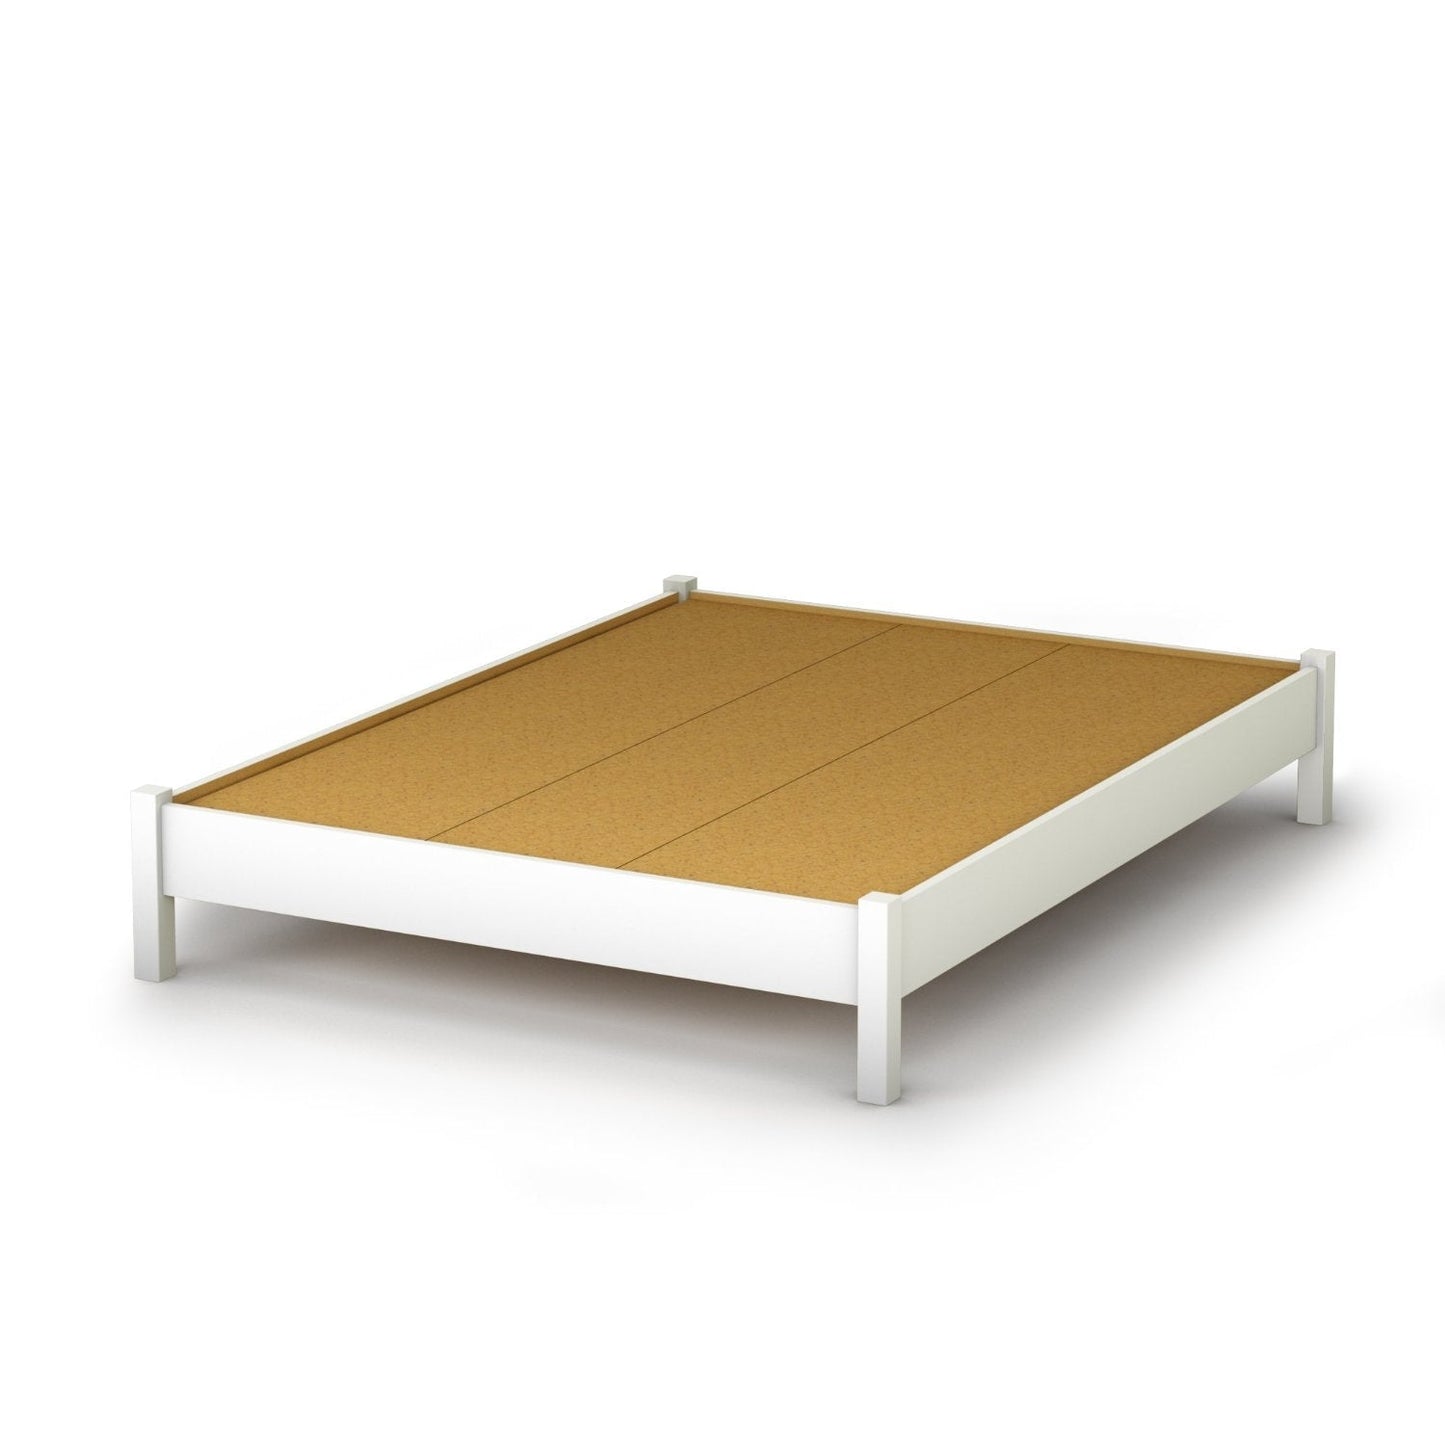 Bedroom > Bed Frames > Platform Beds - Full Size Simple Platform Bed In White Finish - Modern Design